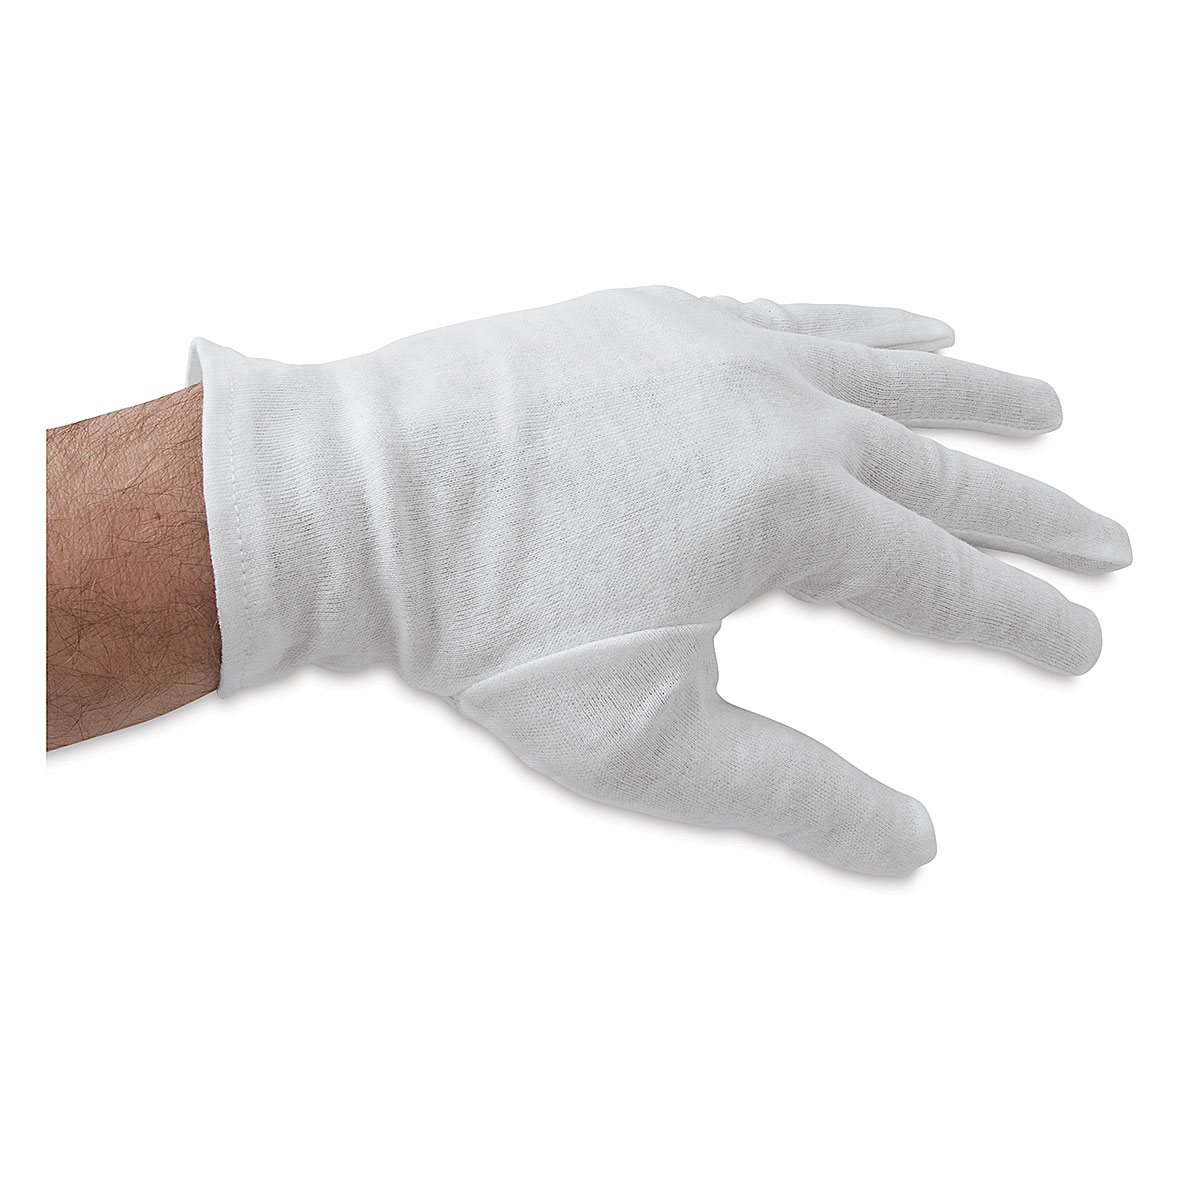 Best Cotton Gloves for Art Handling –